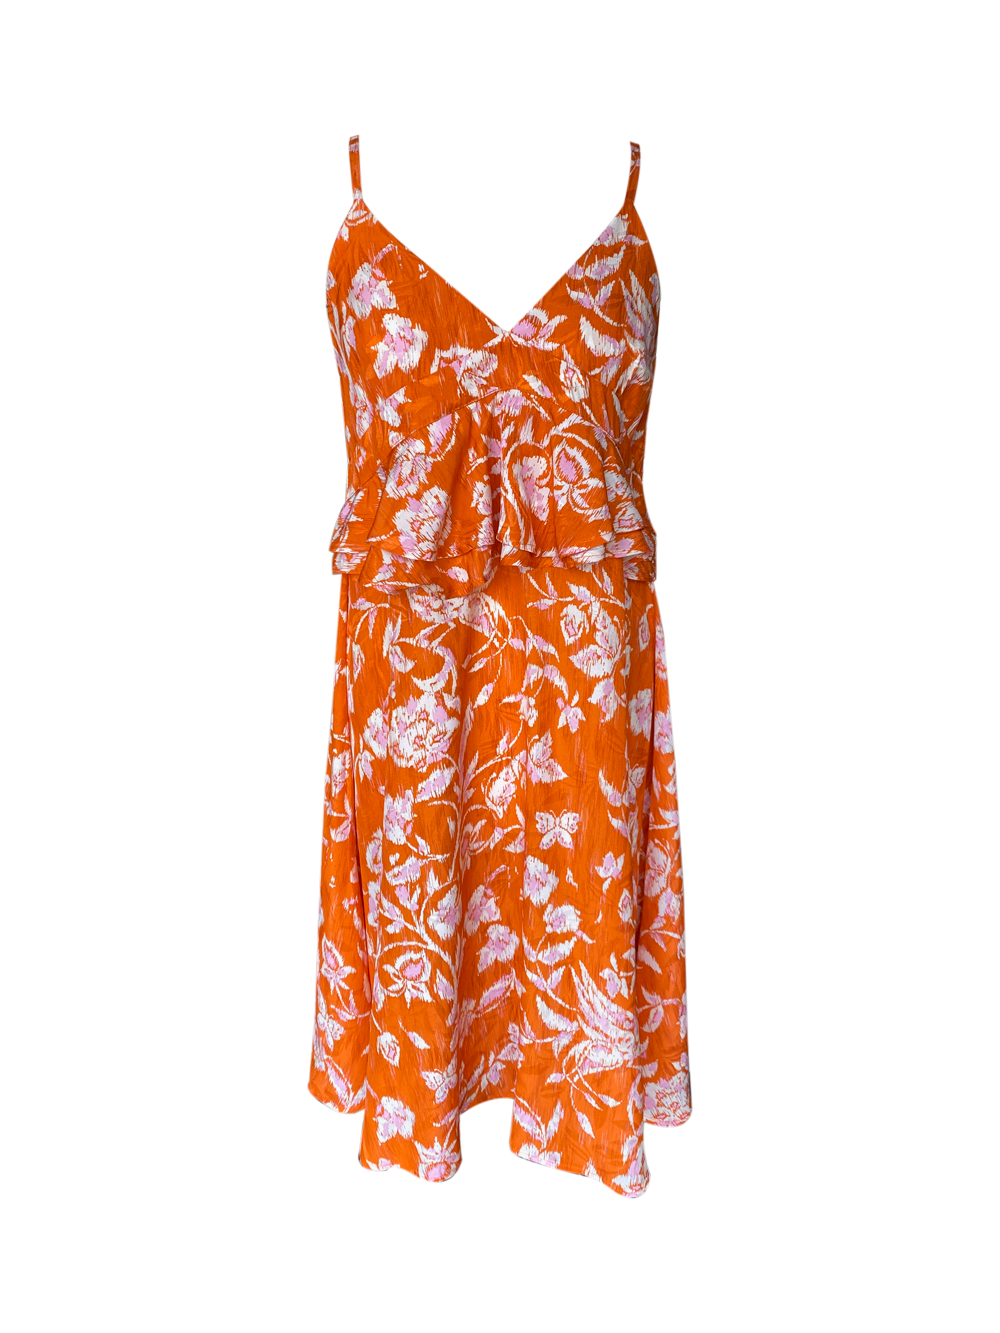 KOCCA Strappy orange flower dress S